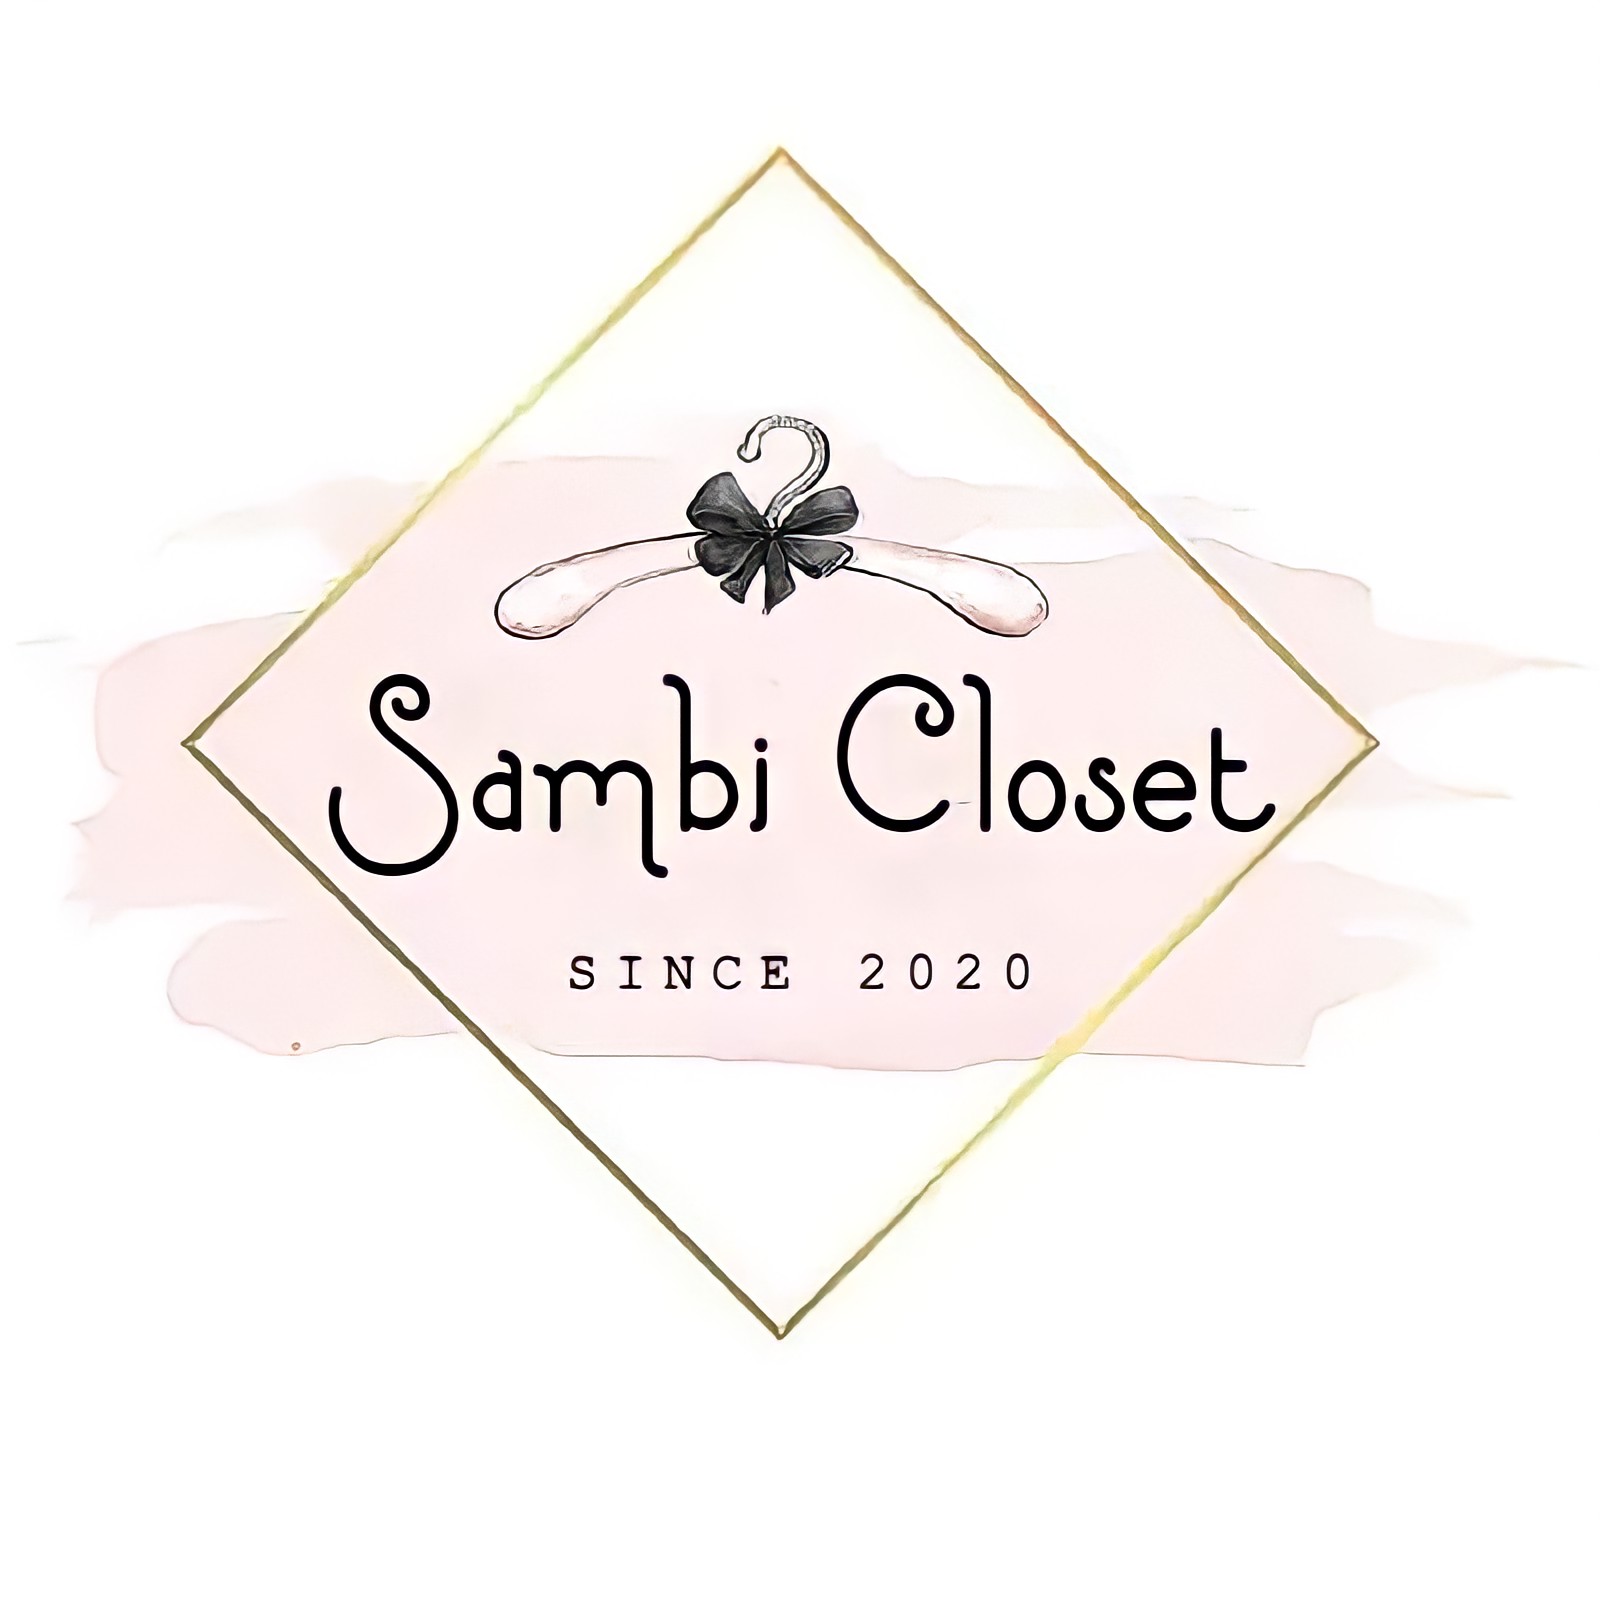 Sambi Closet